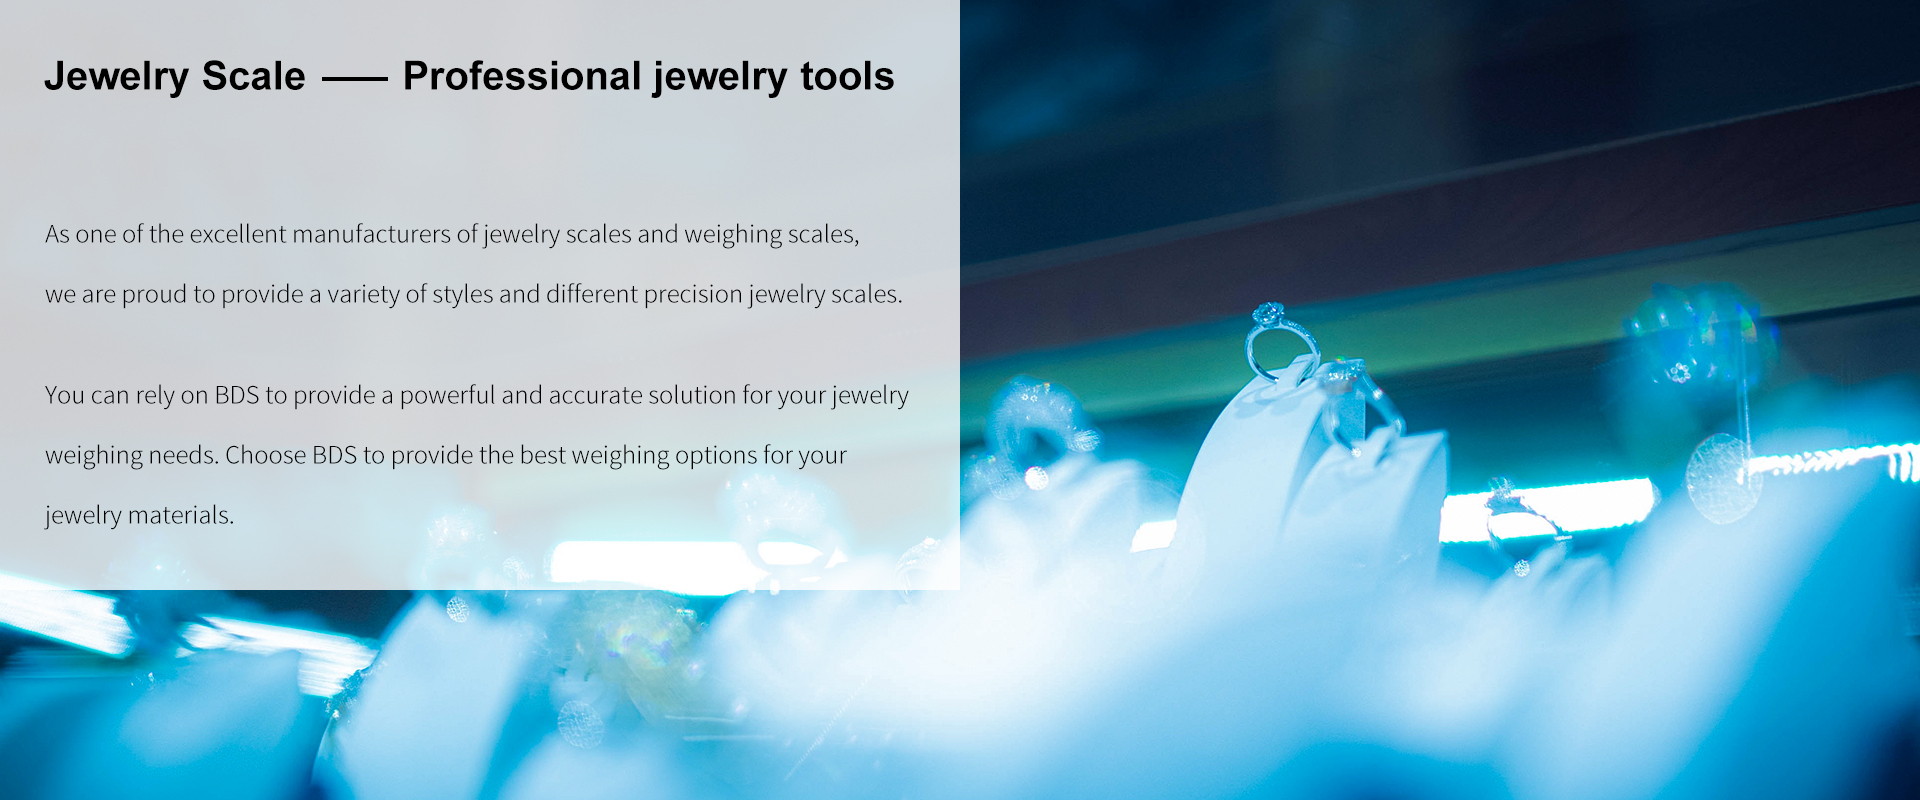 Jewelry Scale| Jewelry tool, Digital pocket scale, Tool Box Jewelry Scale, Jeweller Jewelry Scale| Jewelry tool, Digital pocket scale, Tool Box Jewelry Scale, Jeweller